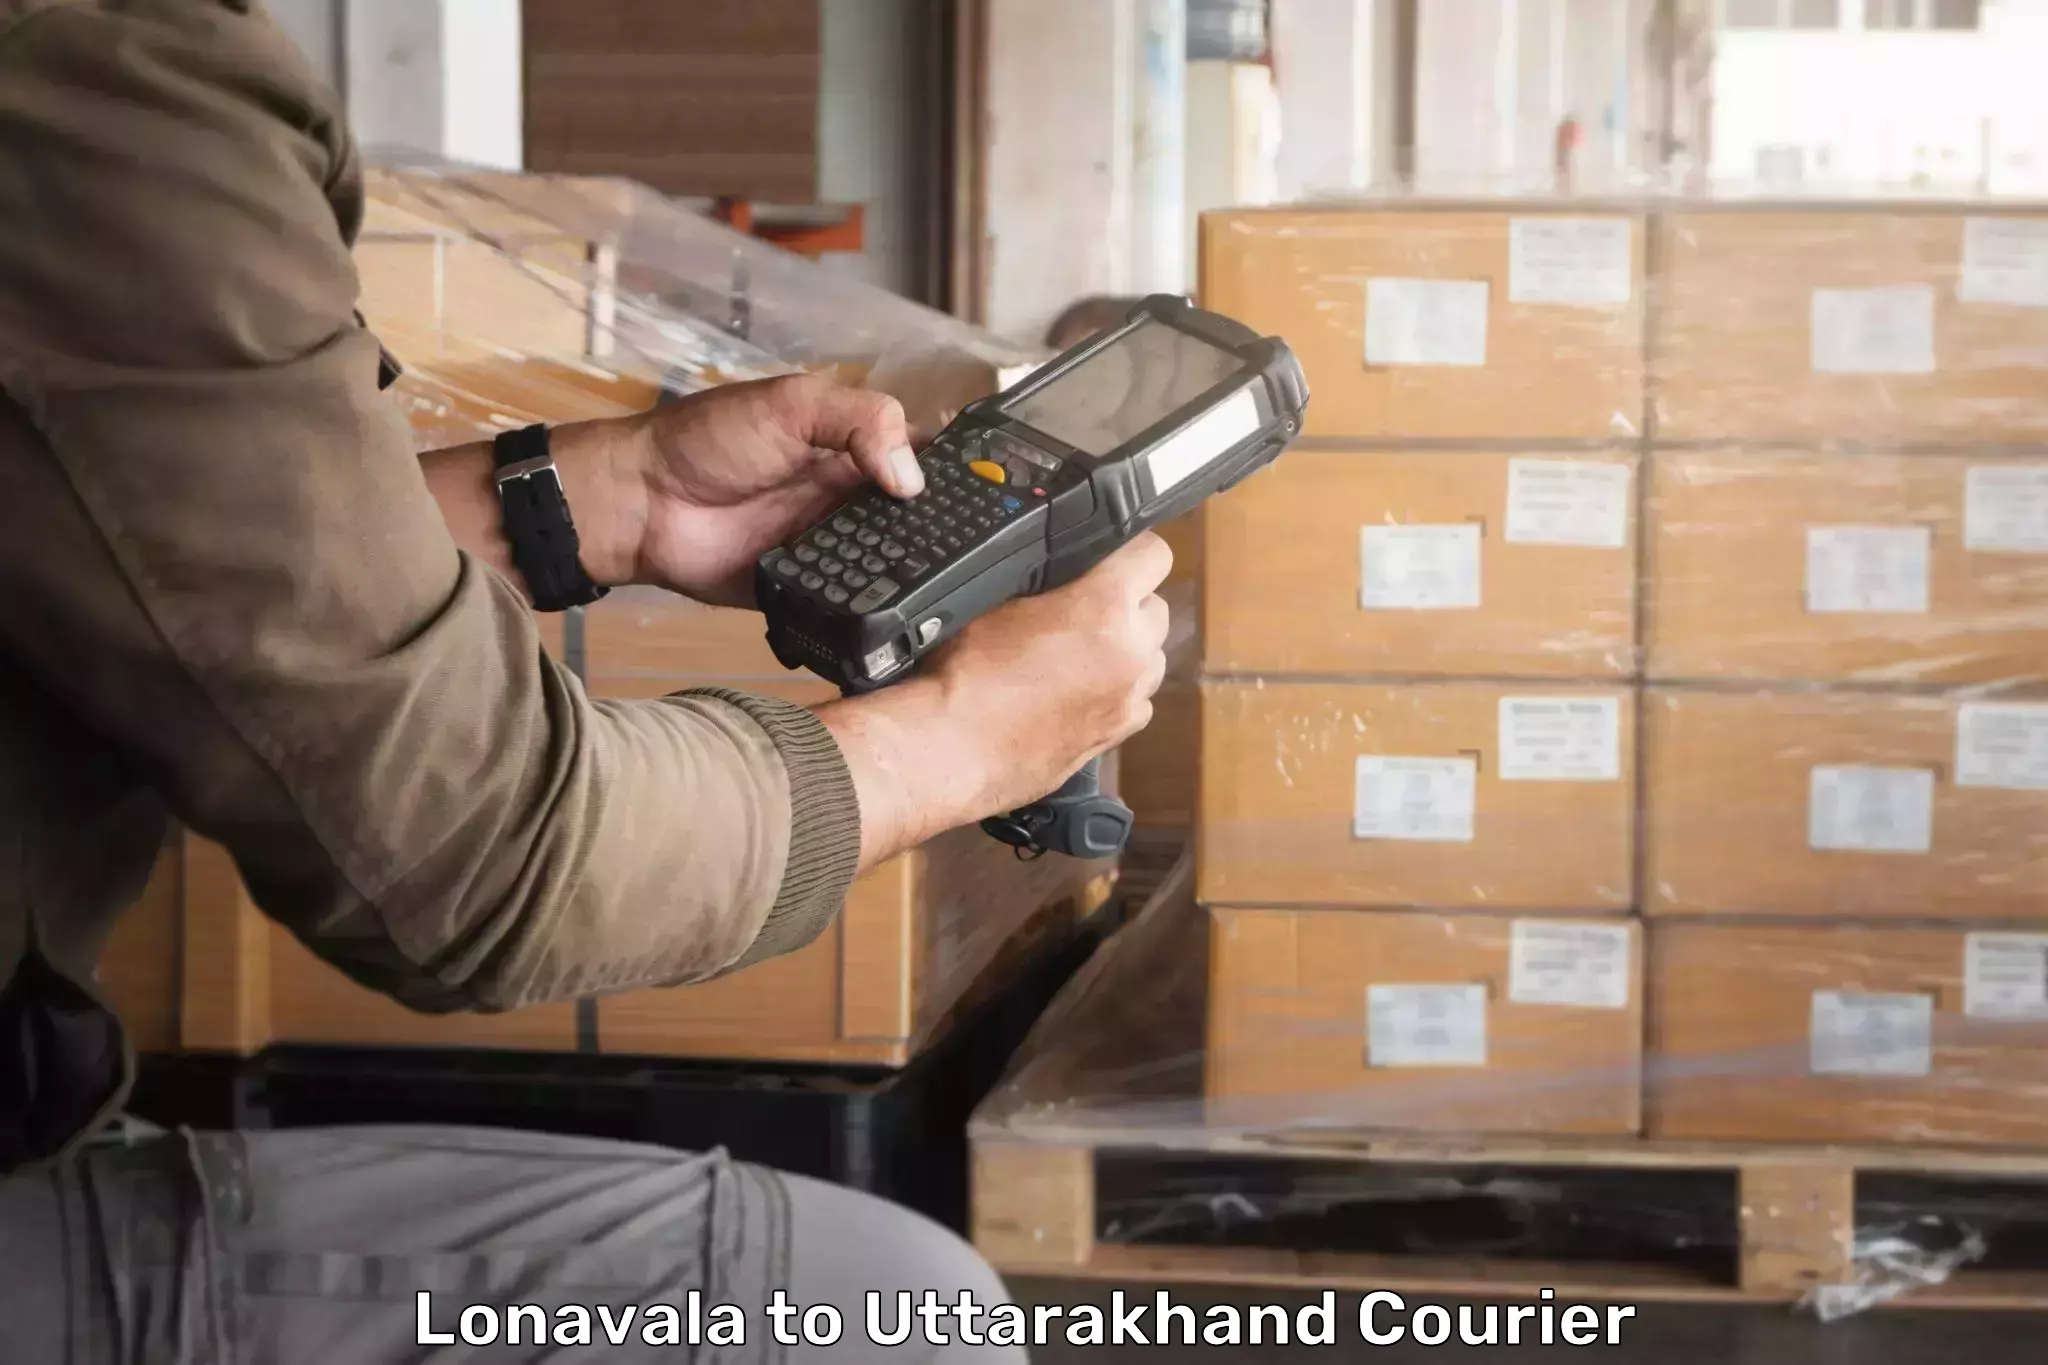 Advanced package delivery in Lonavala to Udham Singh Nagar